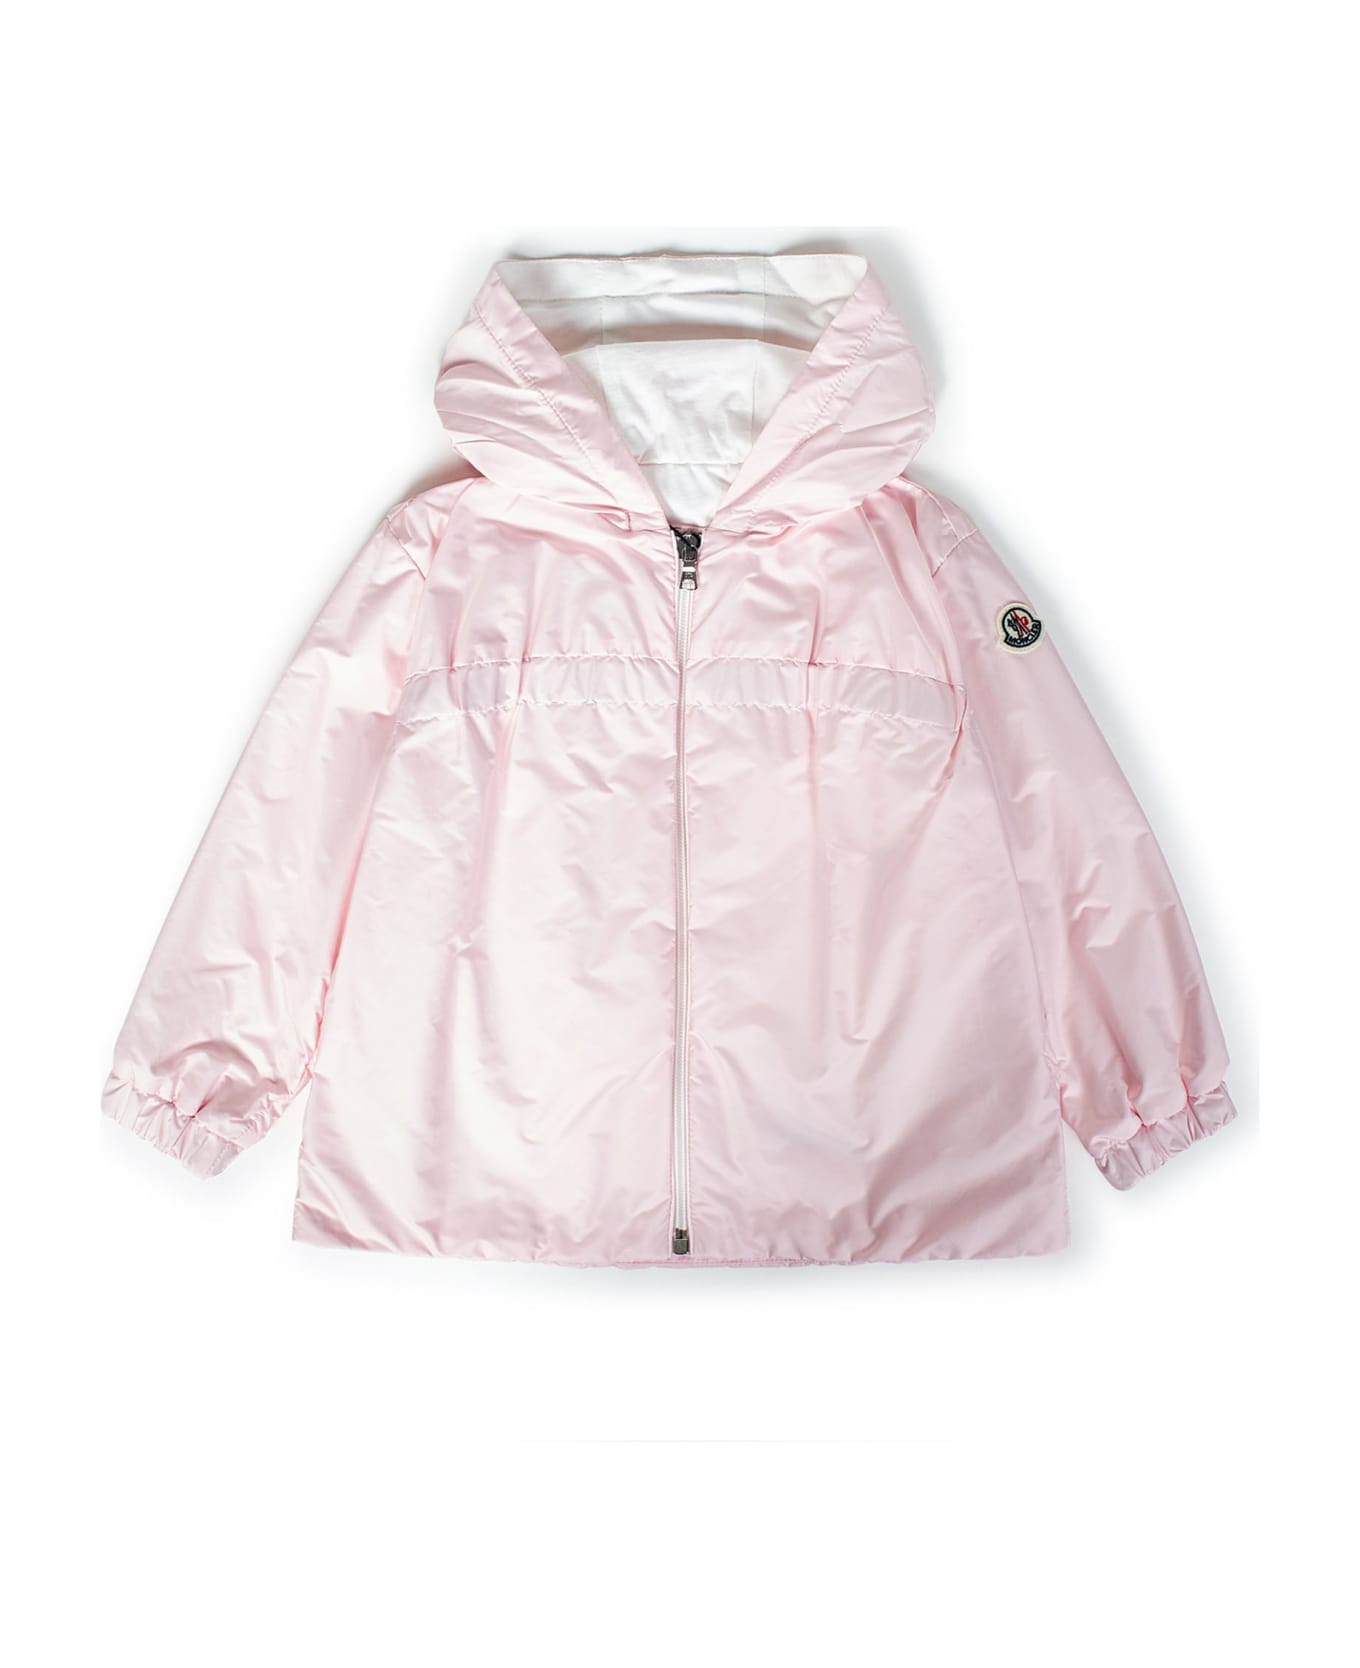 Moncler Enfant Jacket - Pink